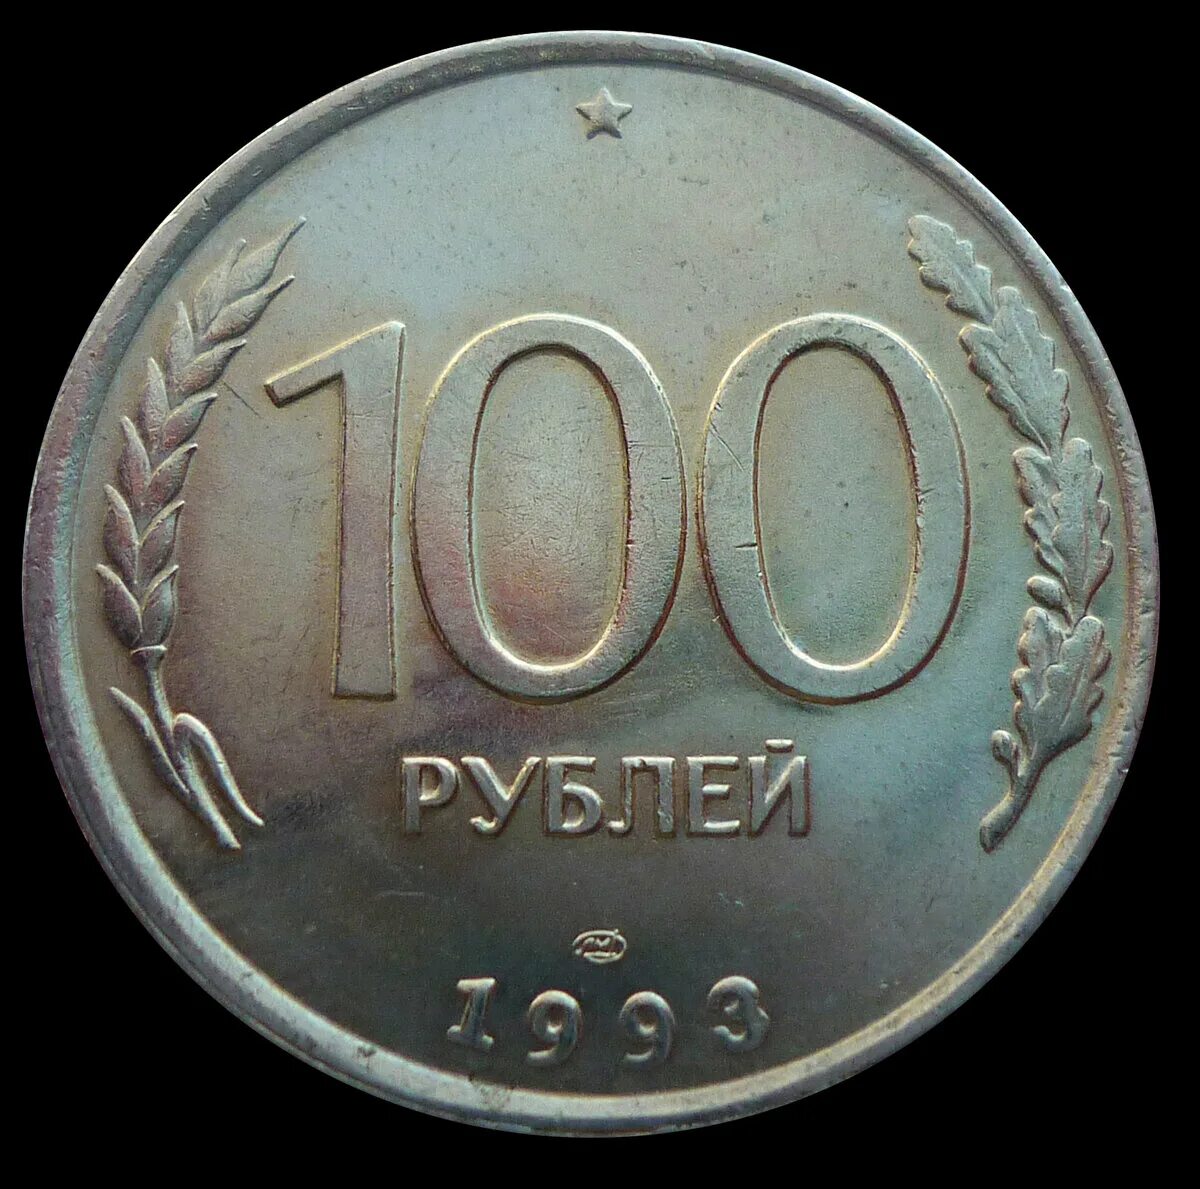 Продано за миллион рублей. 100 Рублей 1993 года. Монеты 1993 года. 100 Руб СССР монета. Рубли 1993.